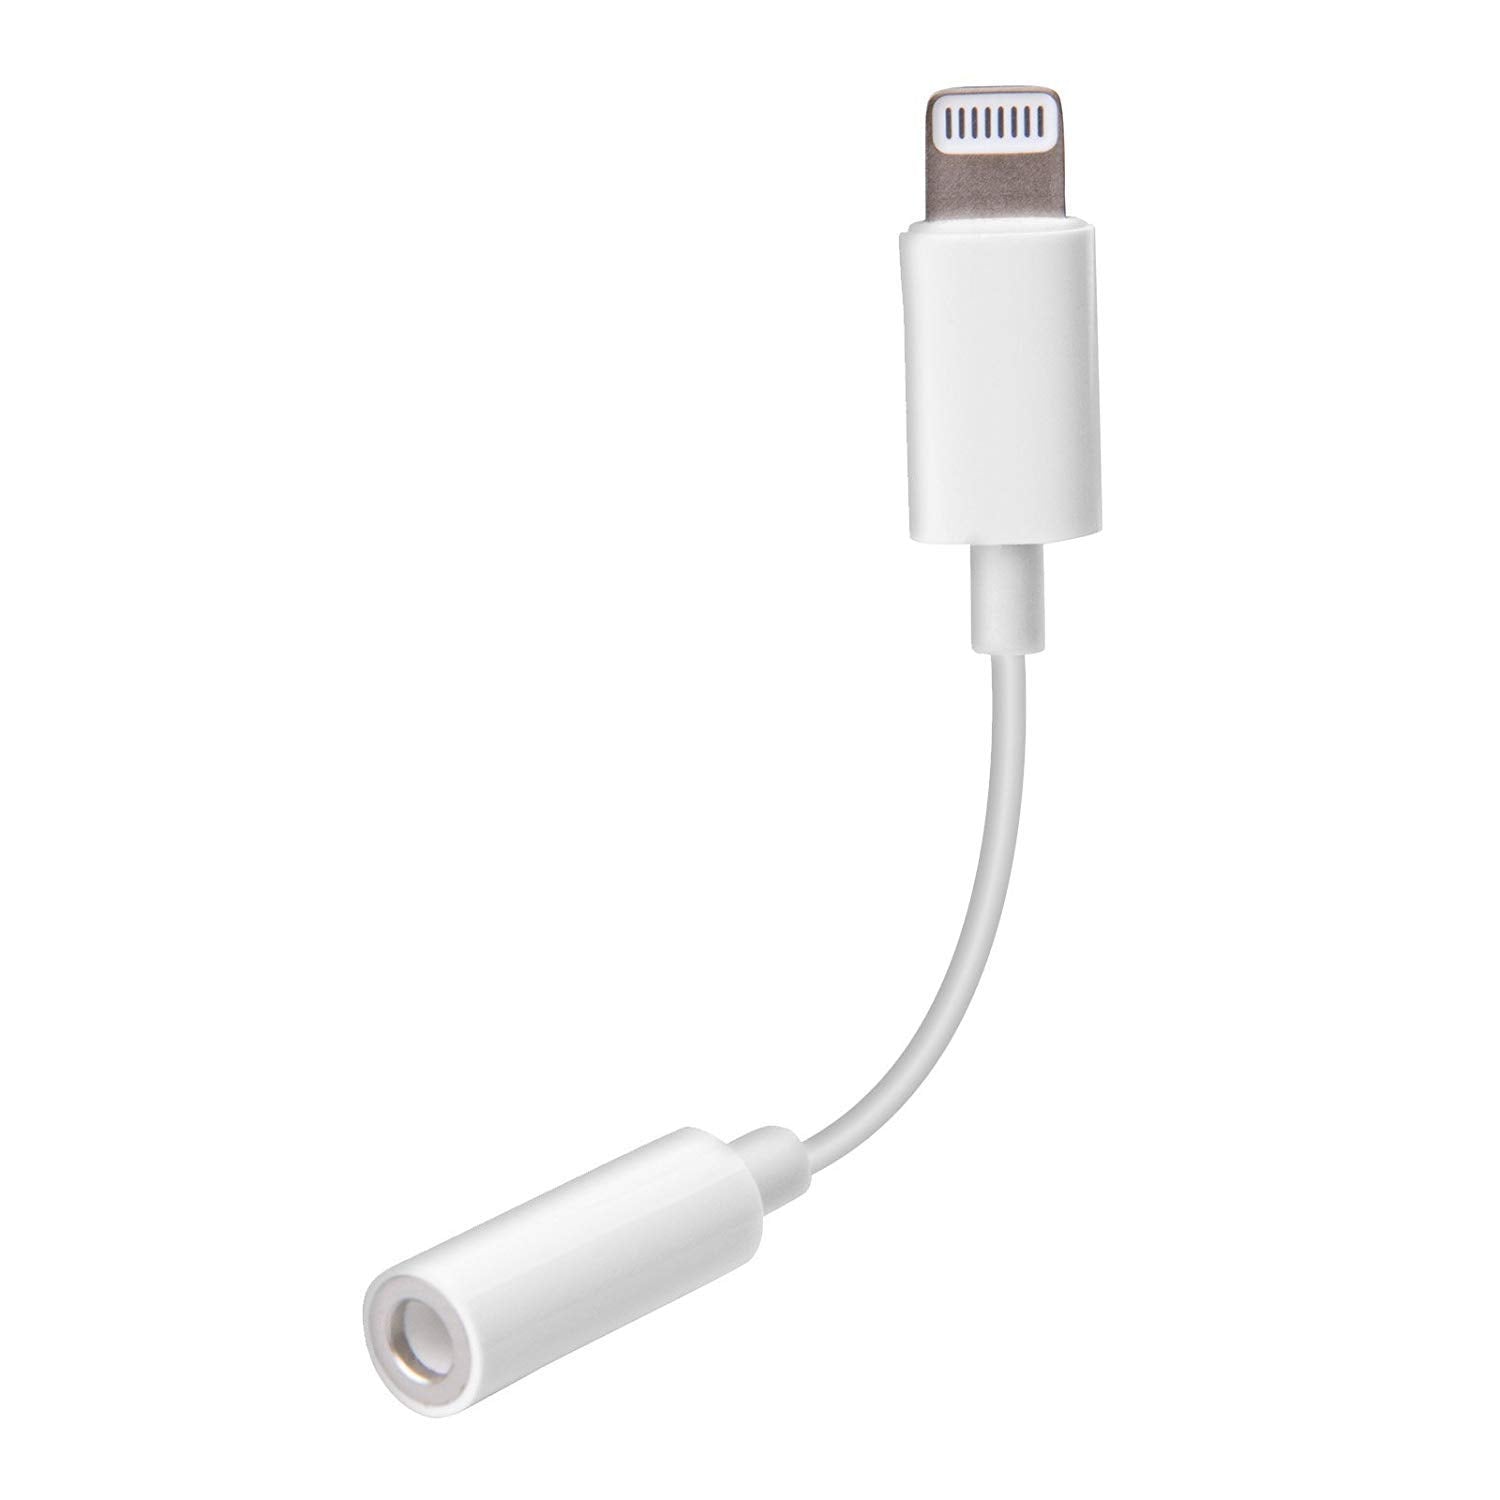 Apple iPad mini 3 Headphone Jack Connector (Lightning to 3.5mm)